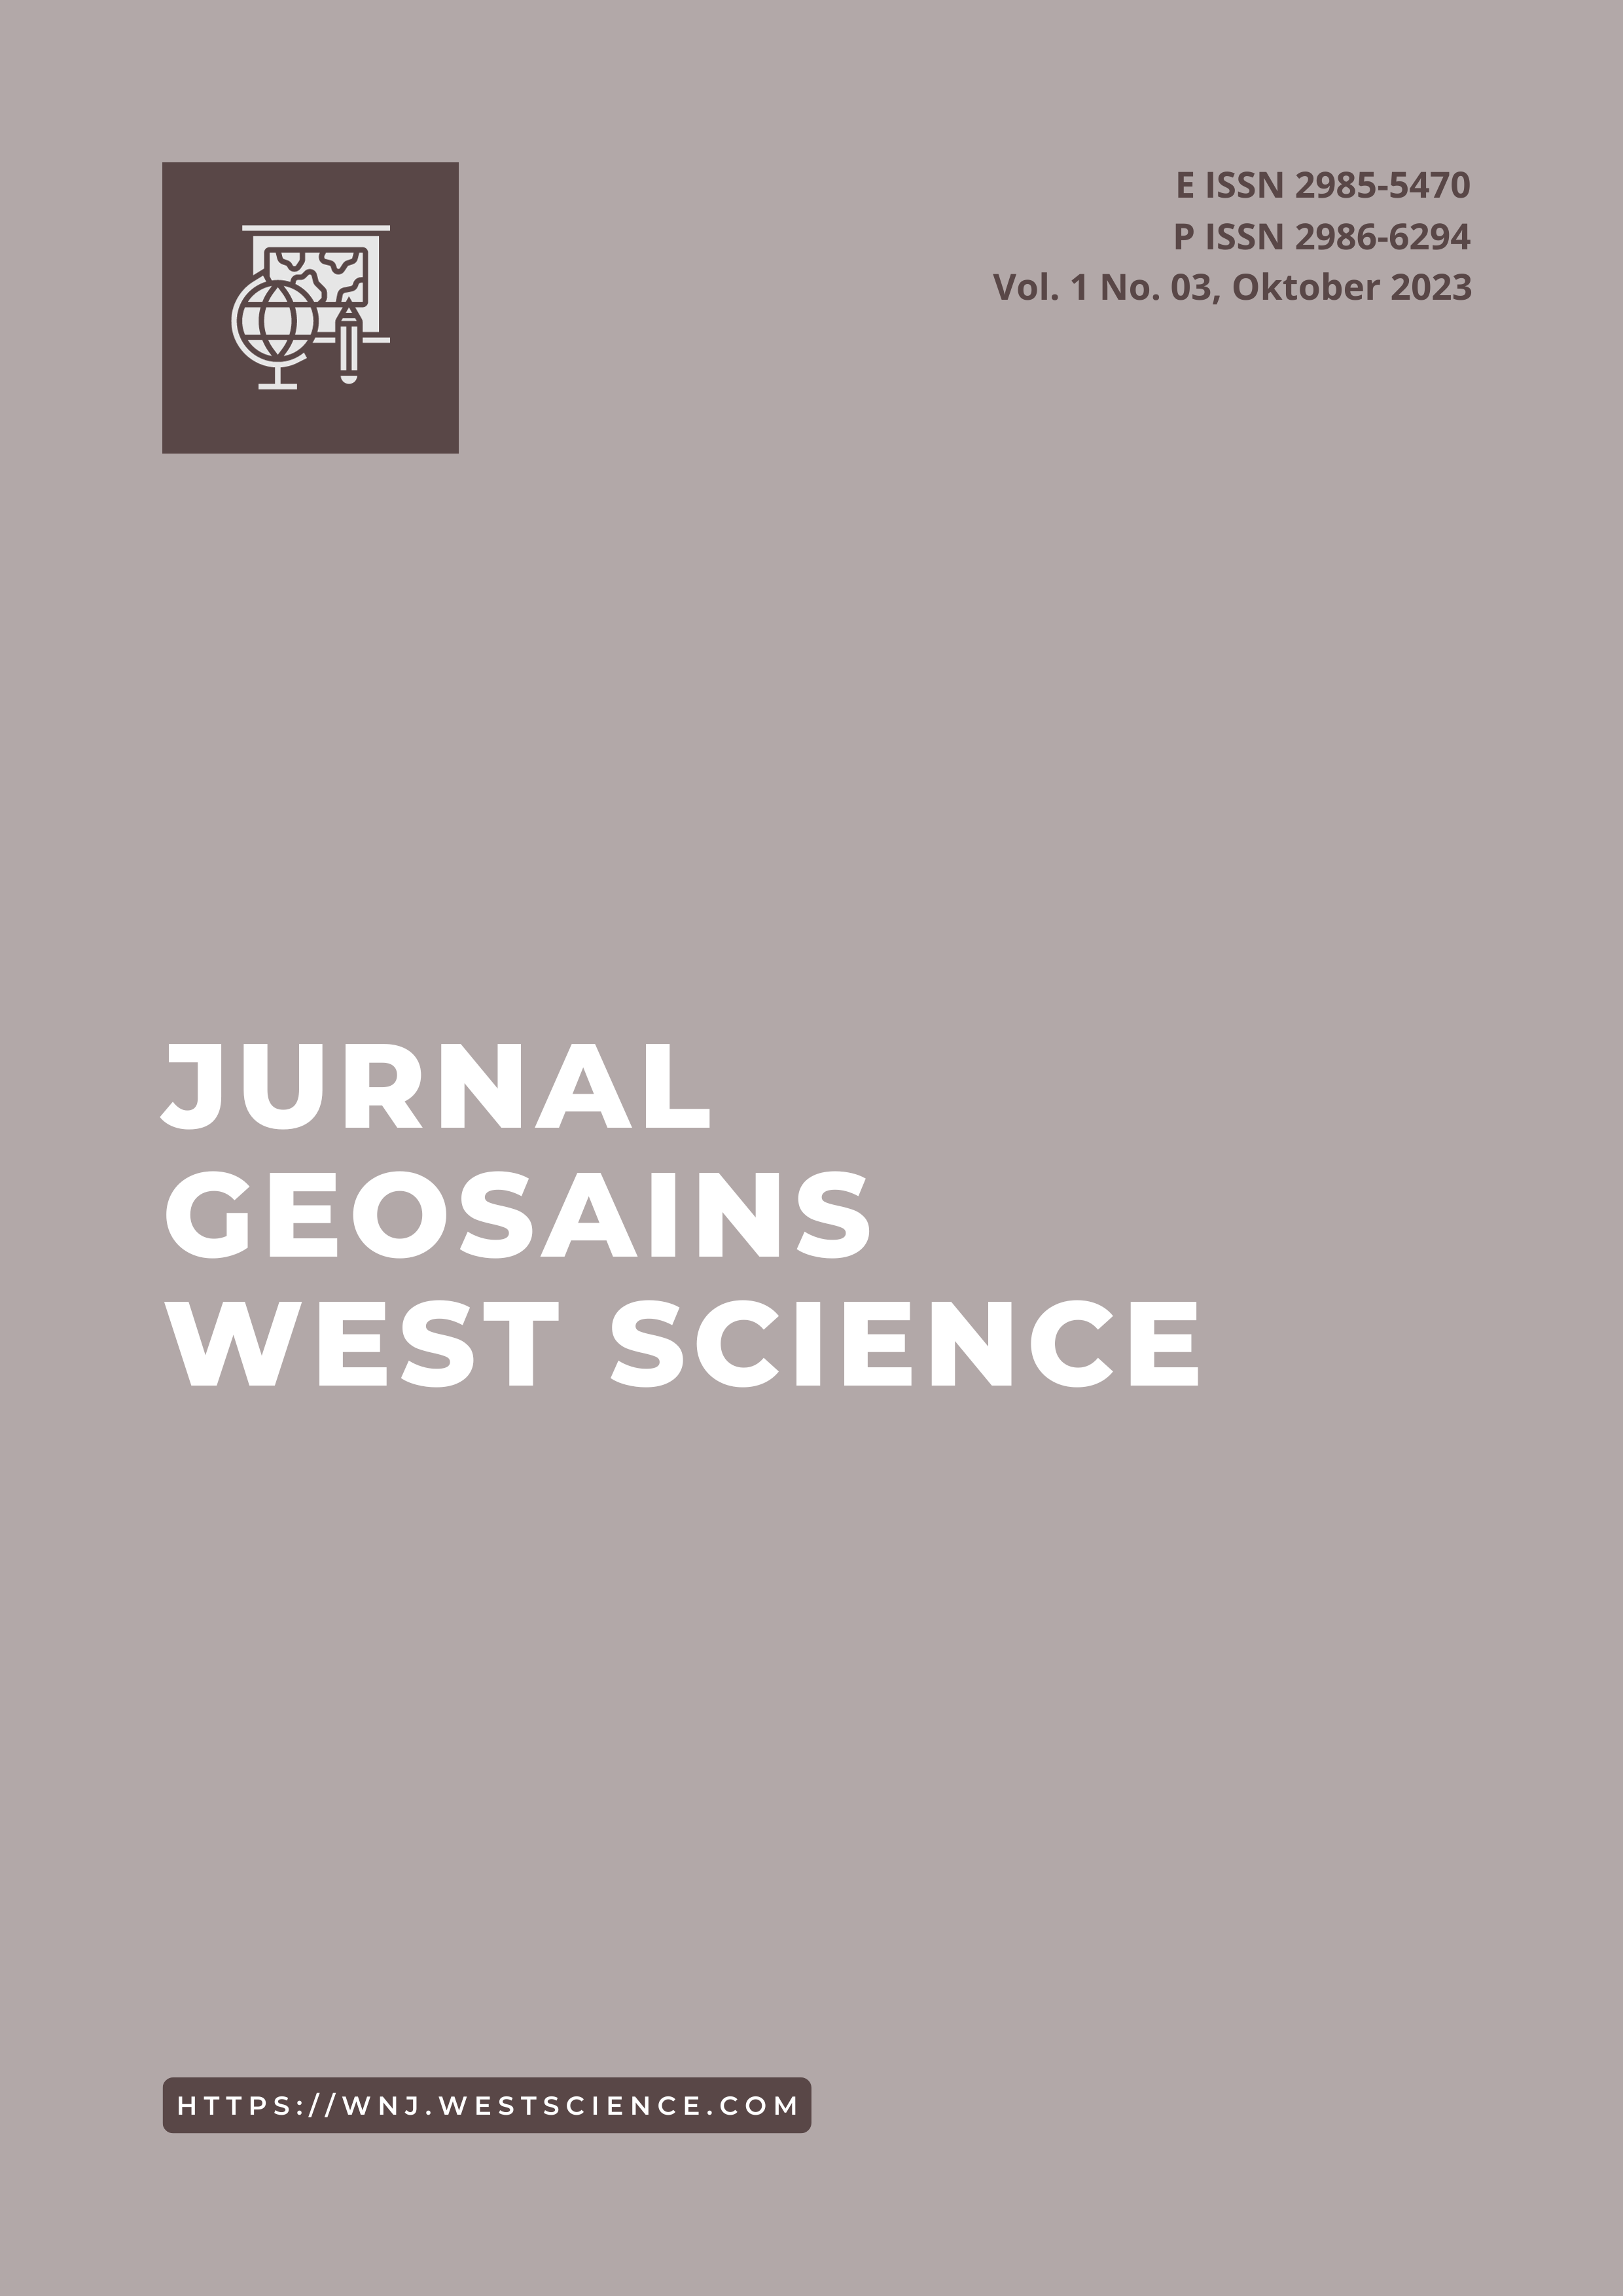 					Lihat Vol 1 No 03 (2023): Jurnal Geosains West Science
				